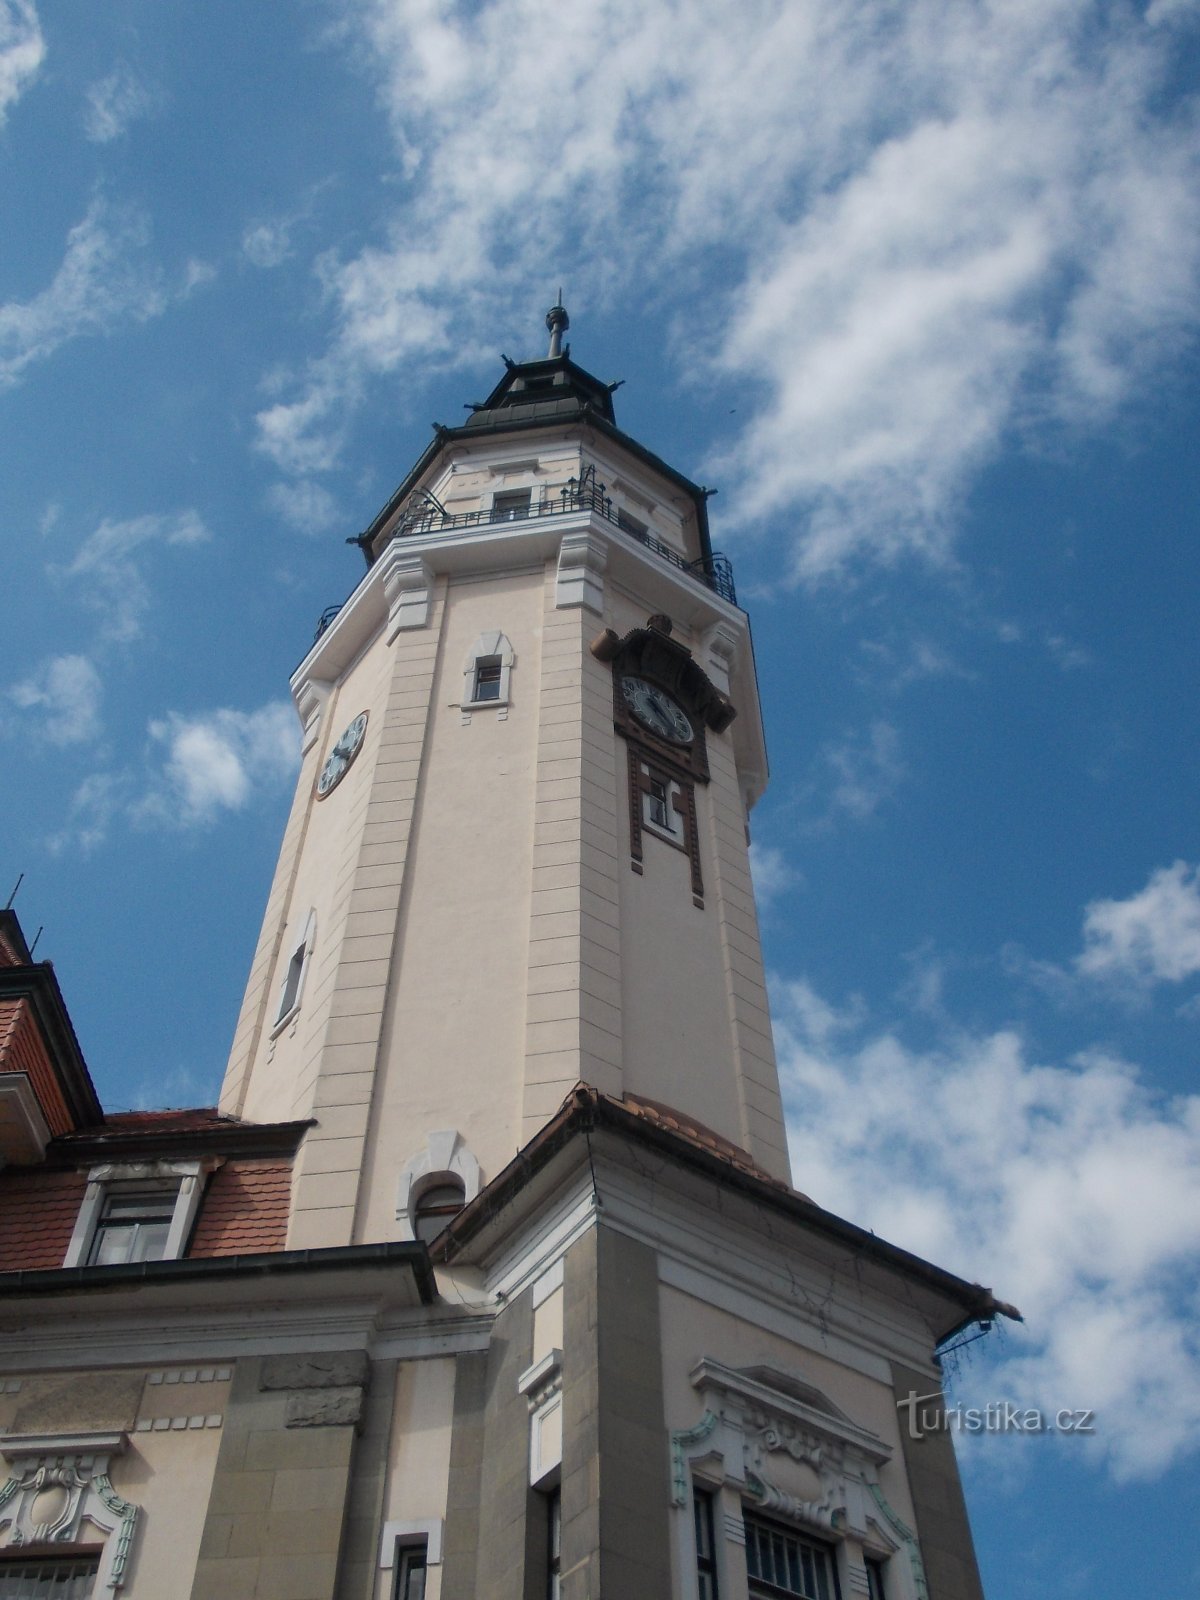 la torre del ayuntamiento tiene 63 metros de altura